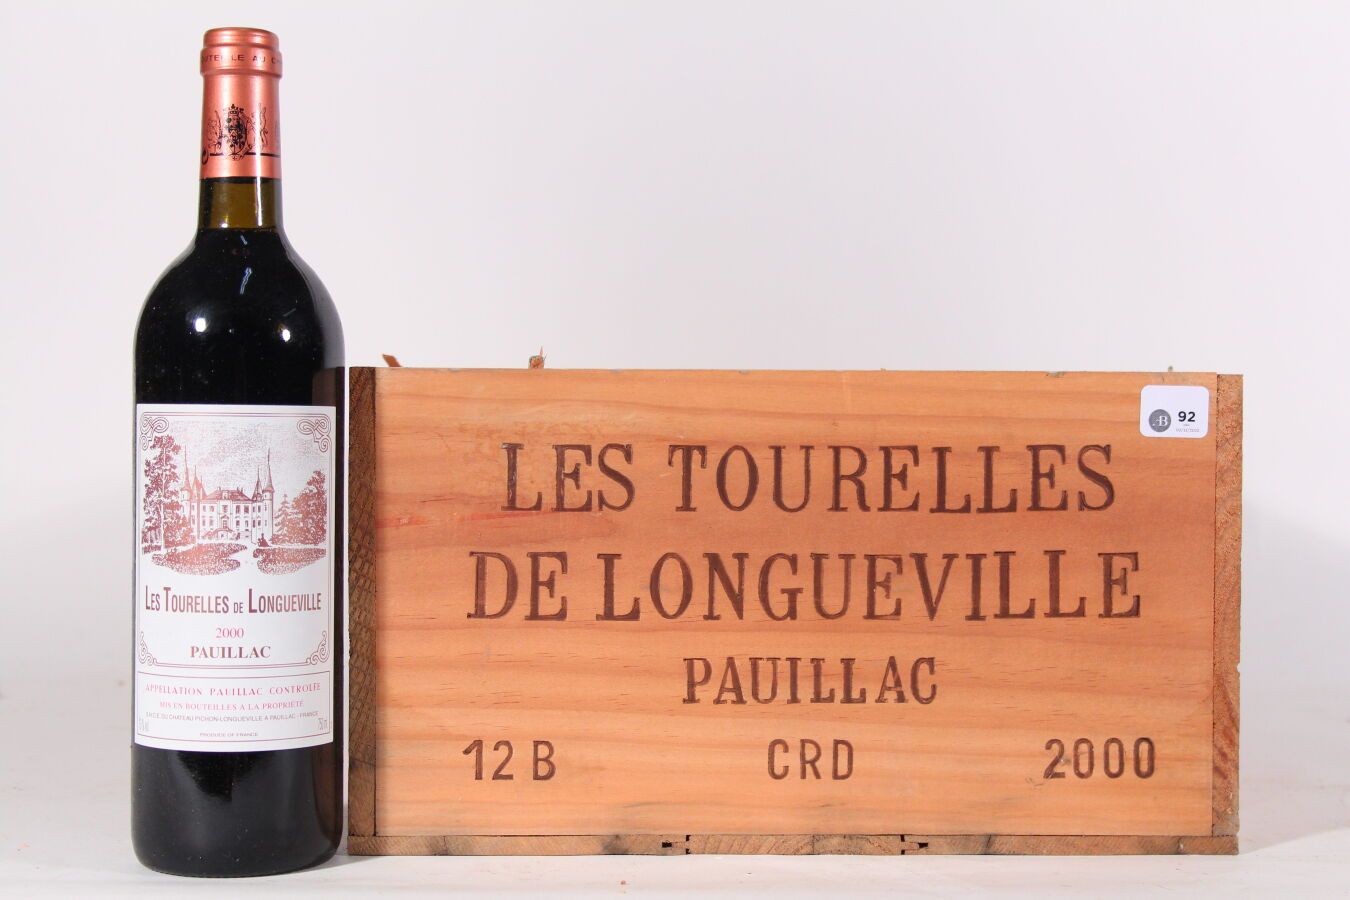 Null 2000 - Les Tourelles de Longueville
Pauillac Red - 12 blles CBO